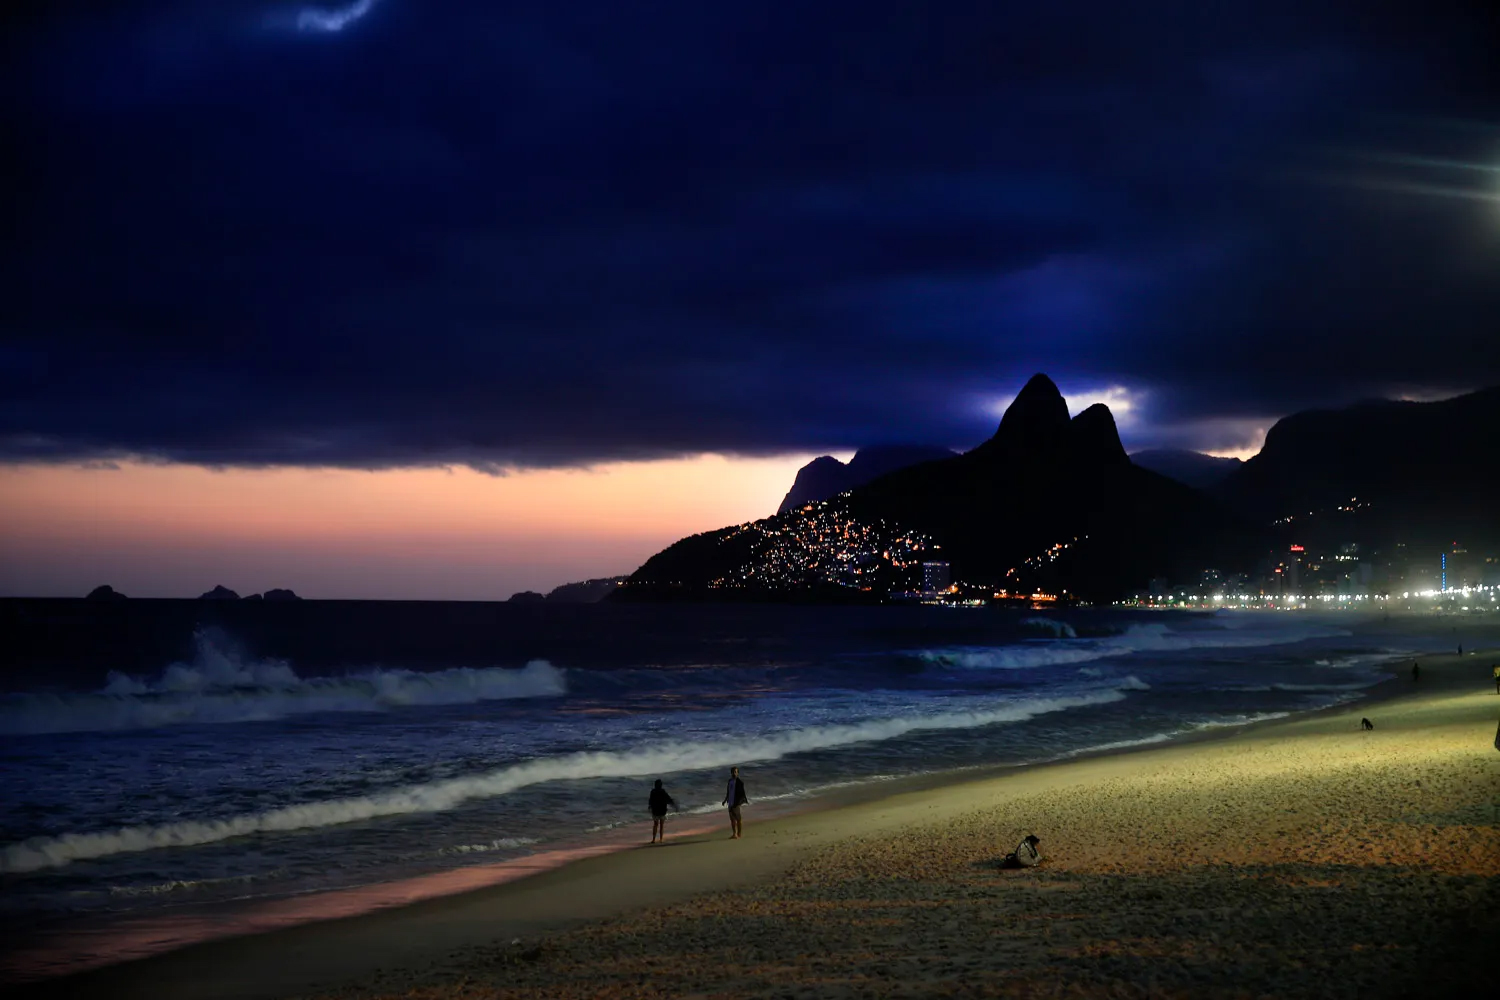 RioLadies - Overnight Escort in Rio - beach night